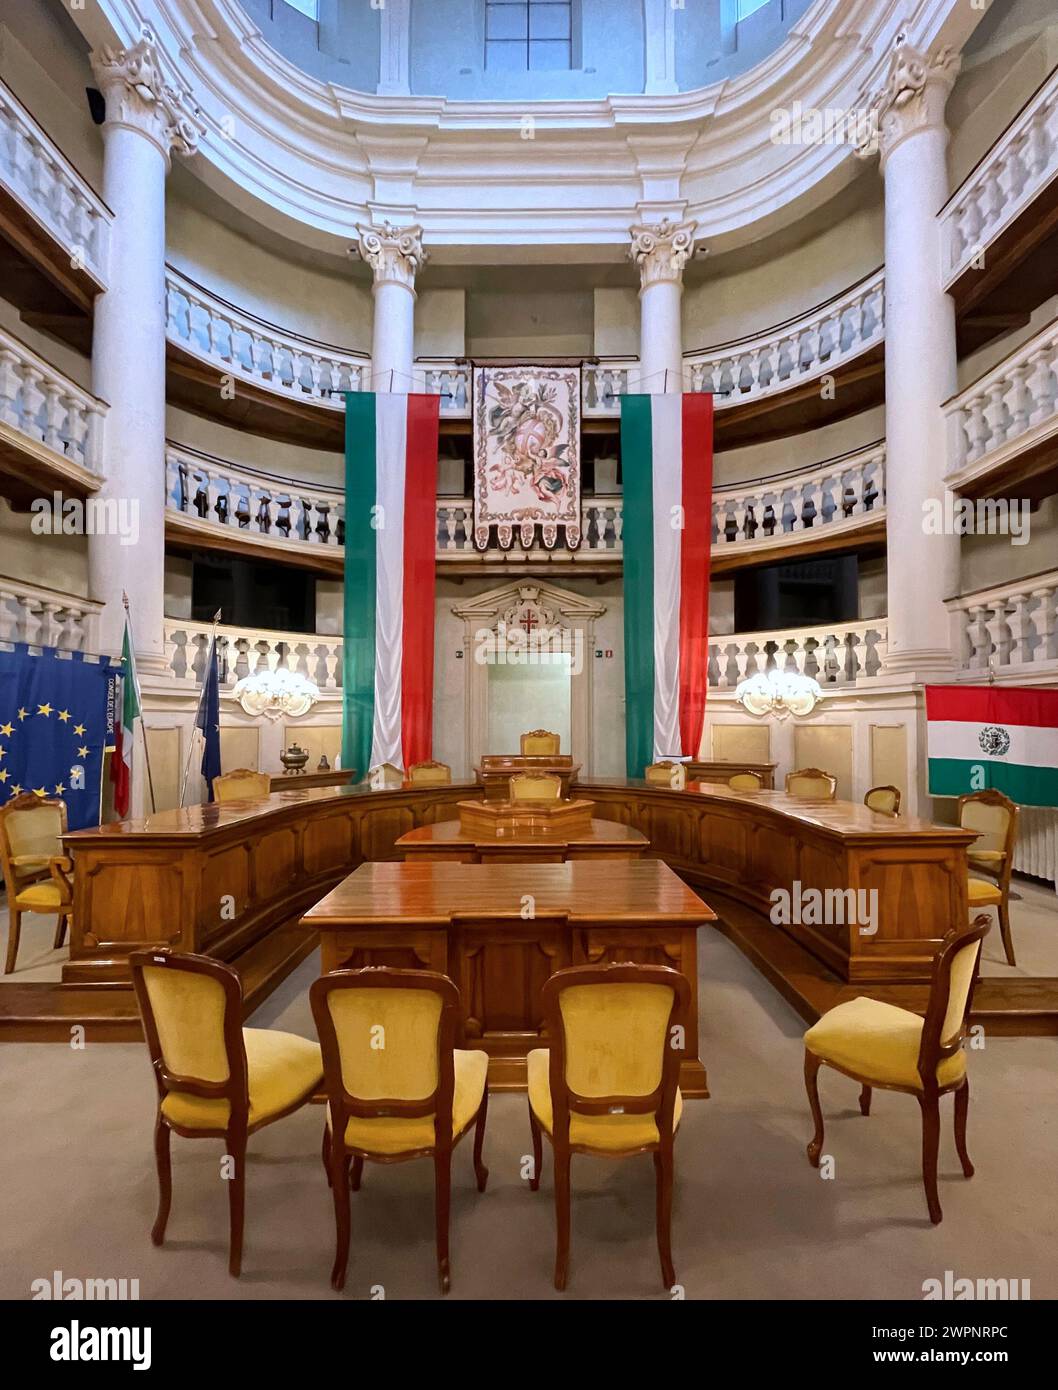 La sala Tricolore, il luogo in cui nacque la bandiera italiana: La sala della sede del Tricolore. Reggio Emilia, Emilia Romagna, Italia Foto Stock